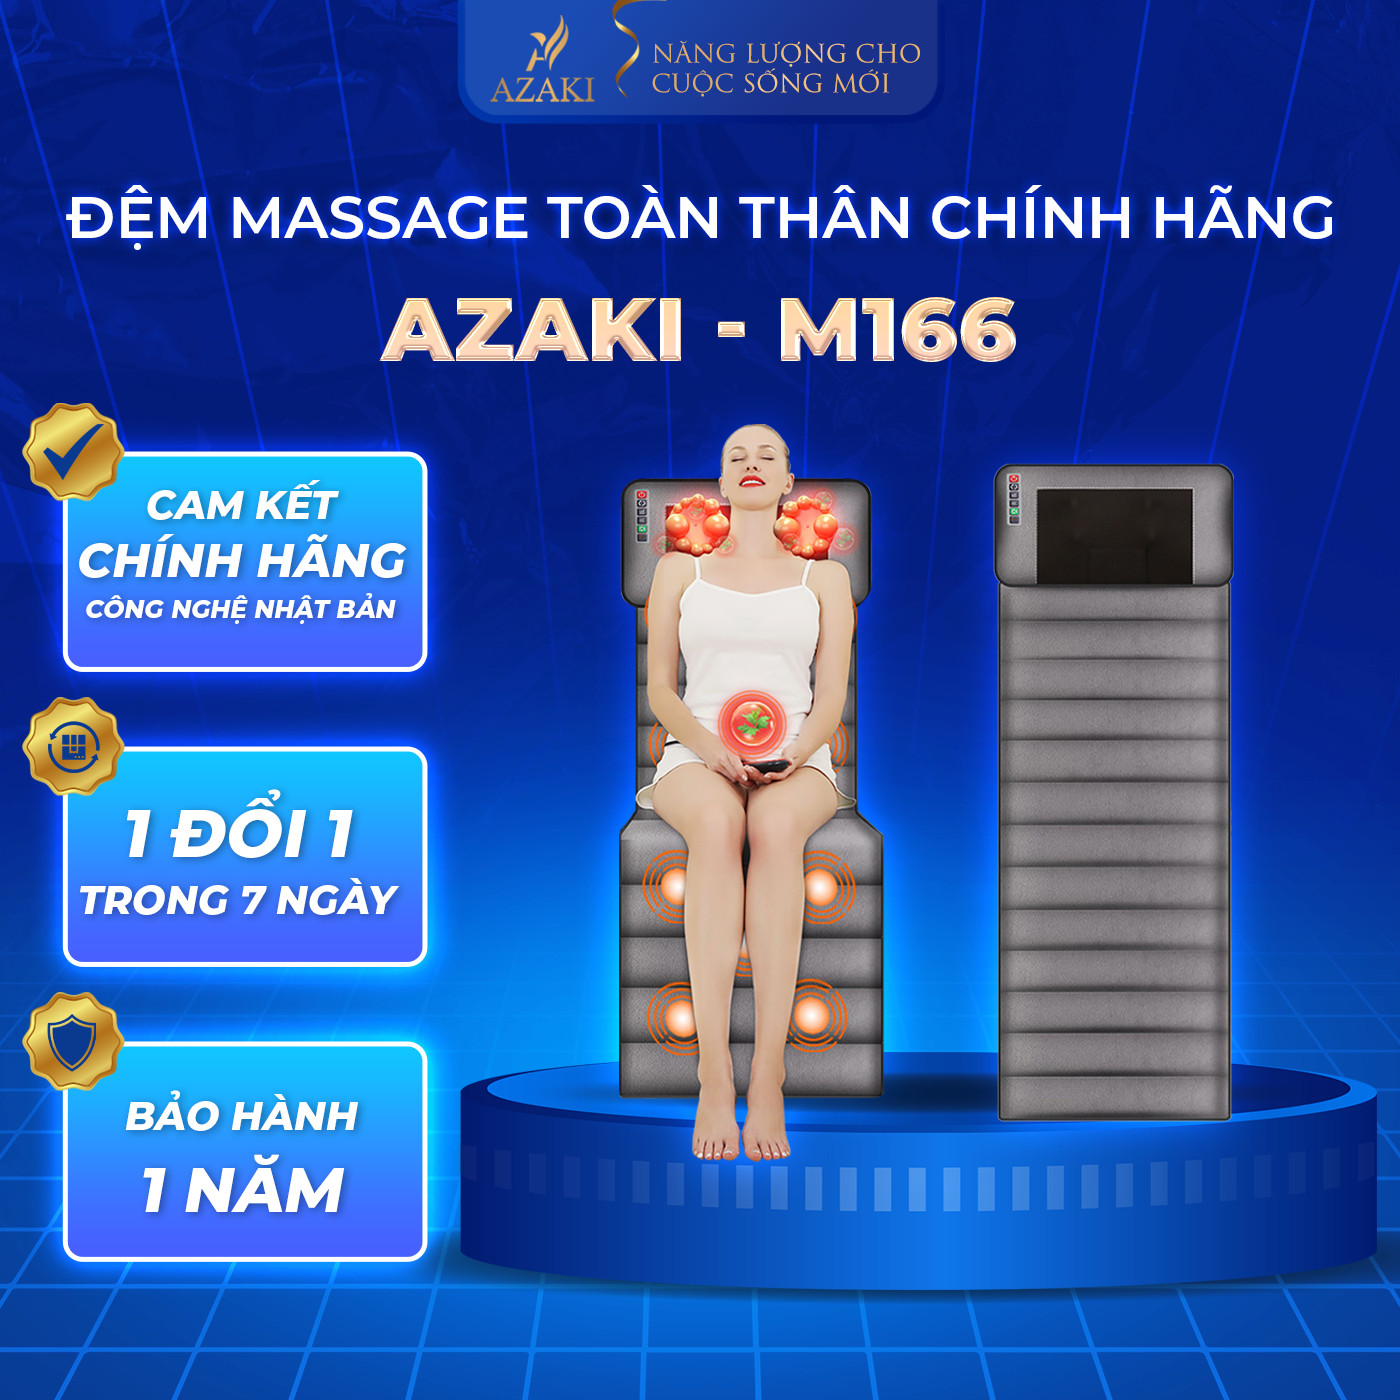 Đệm massage toàn thân Chính Hãng Azaki M166, giảm đau cơ bắp thư giãn